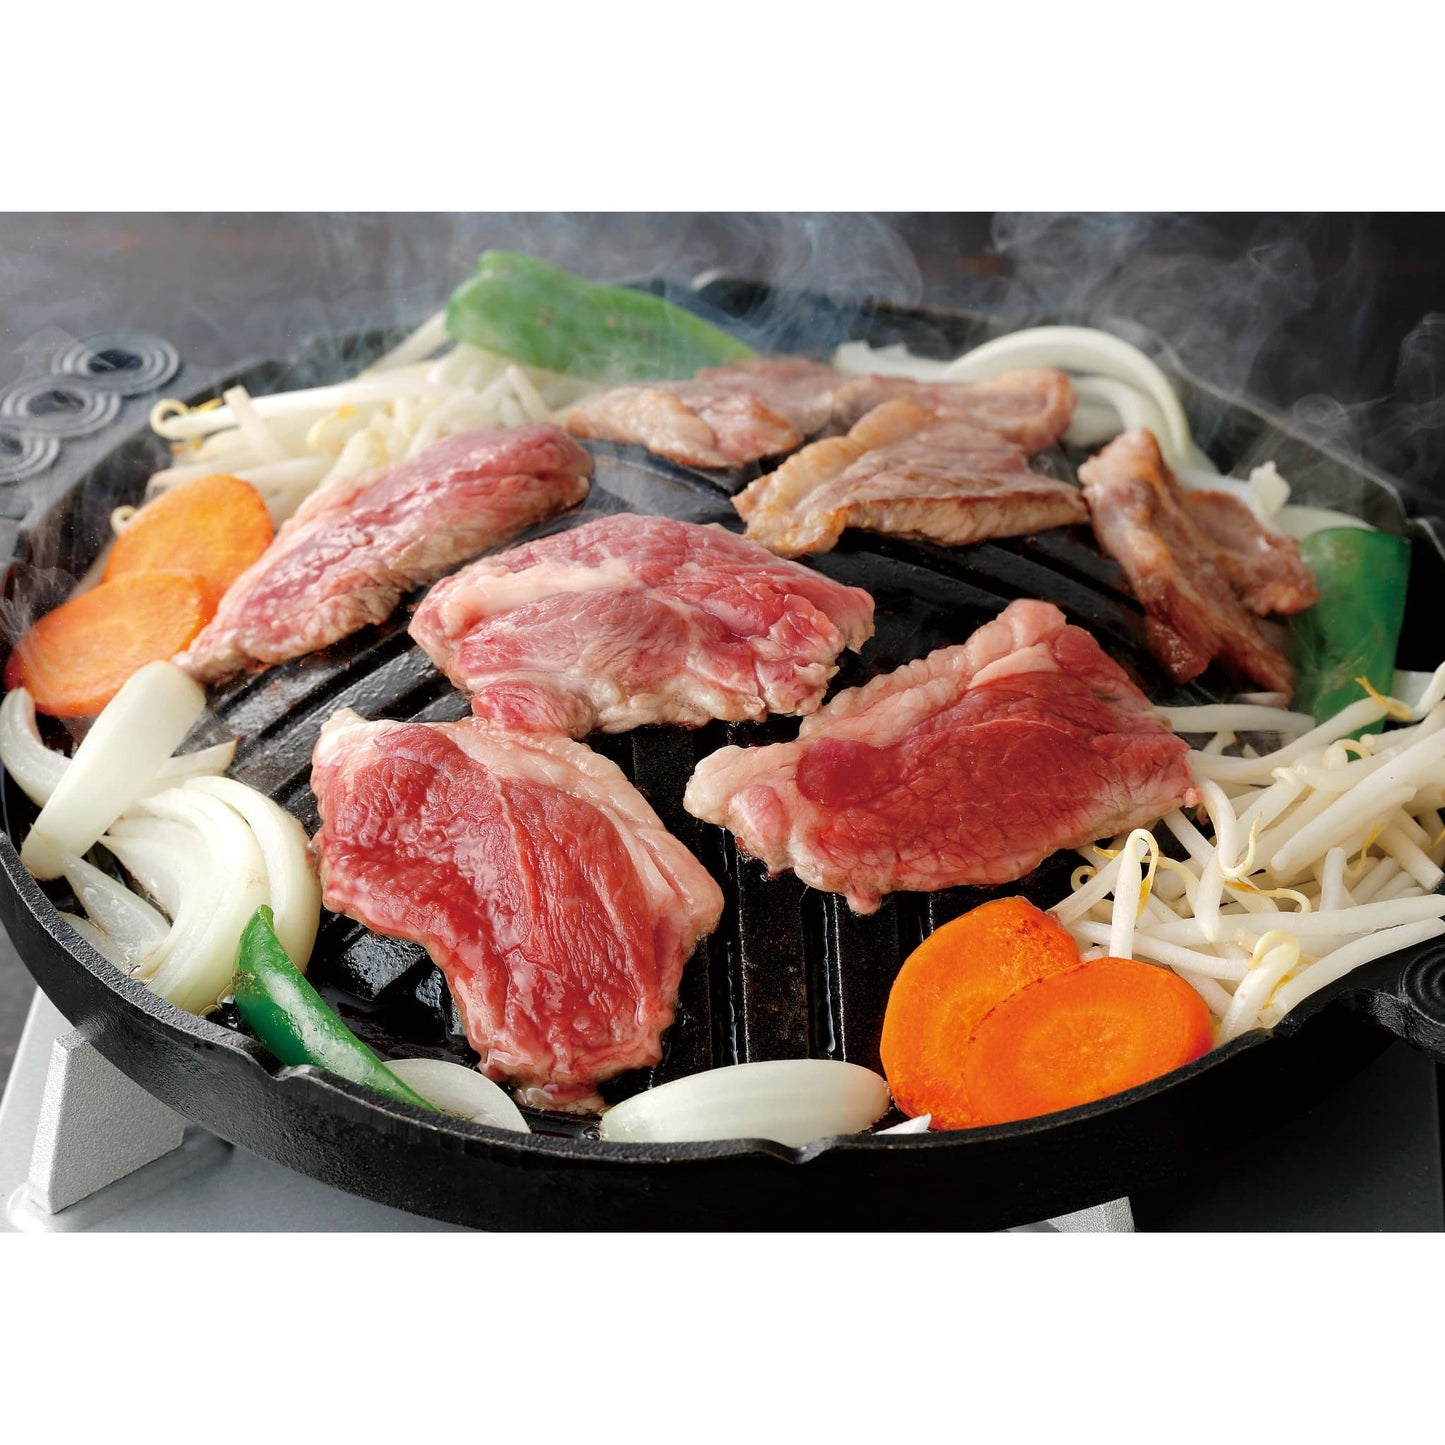 【送料込み】【北海道】肉の山本 特撰生ラム たれ付き 400g